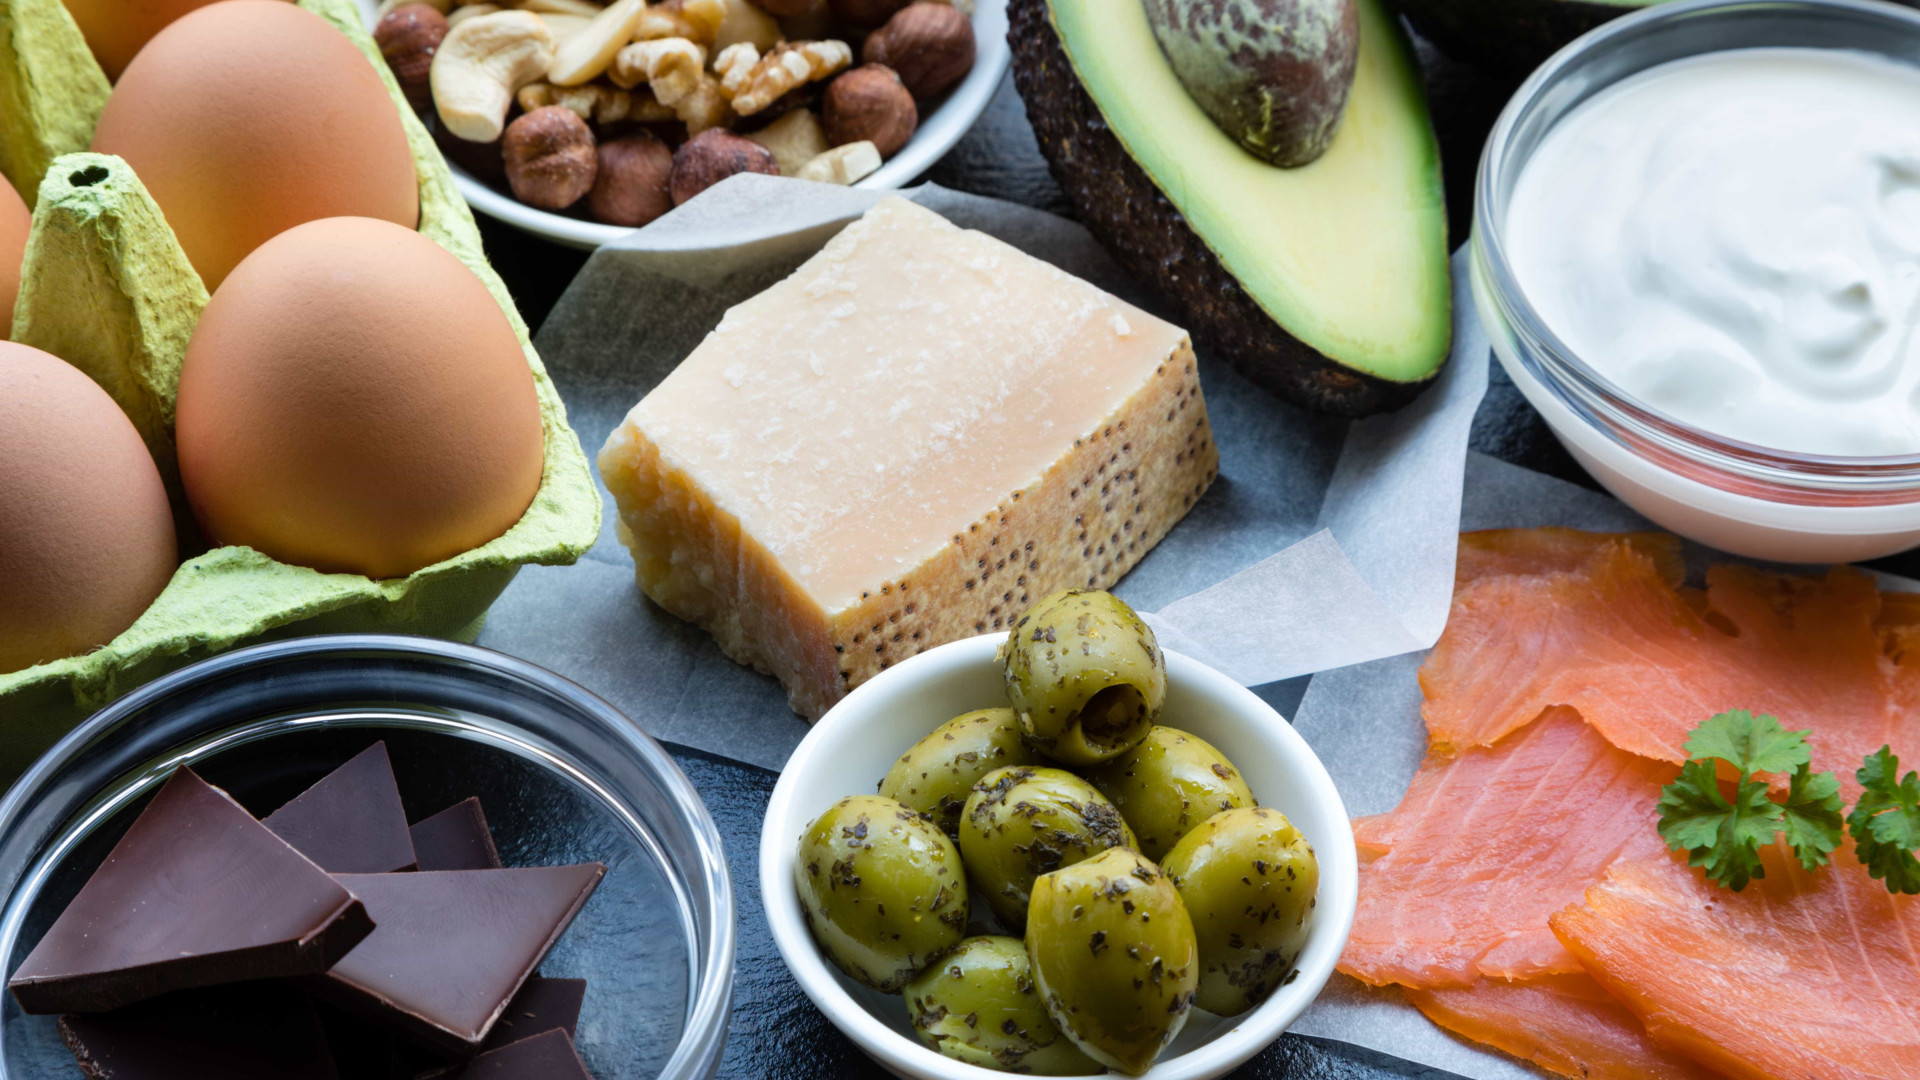 Dieta cetogênica: consegue cortar os carboidratos das refeições?